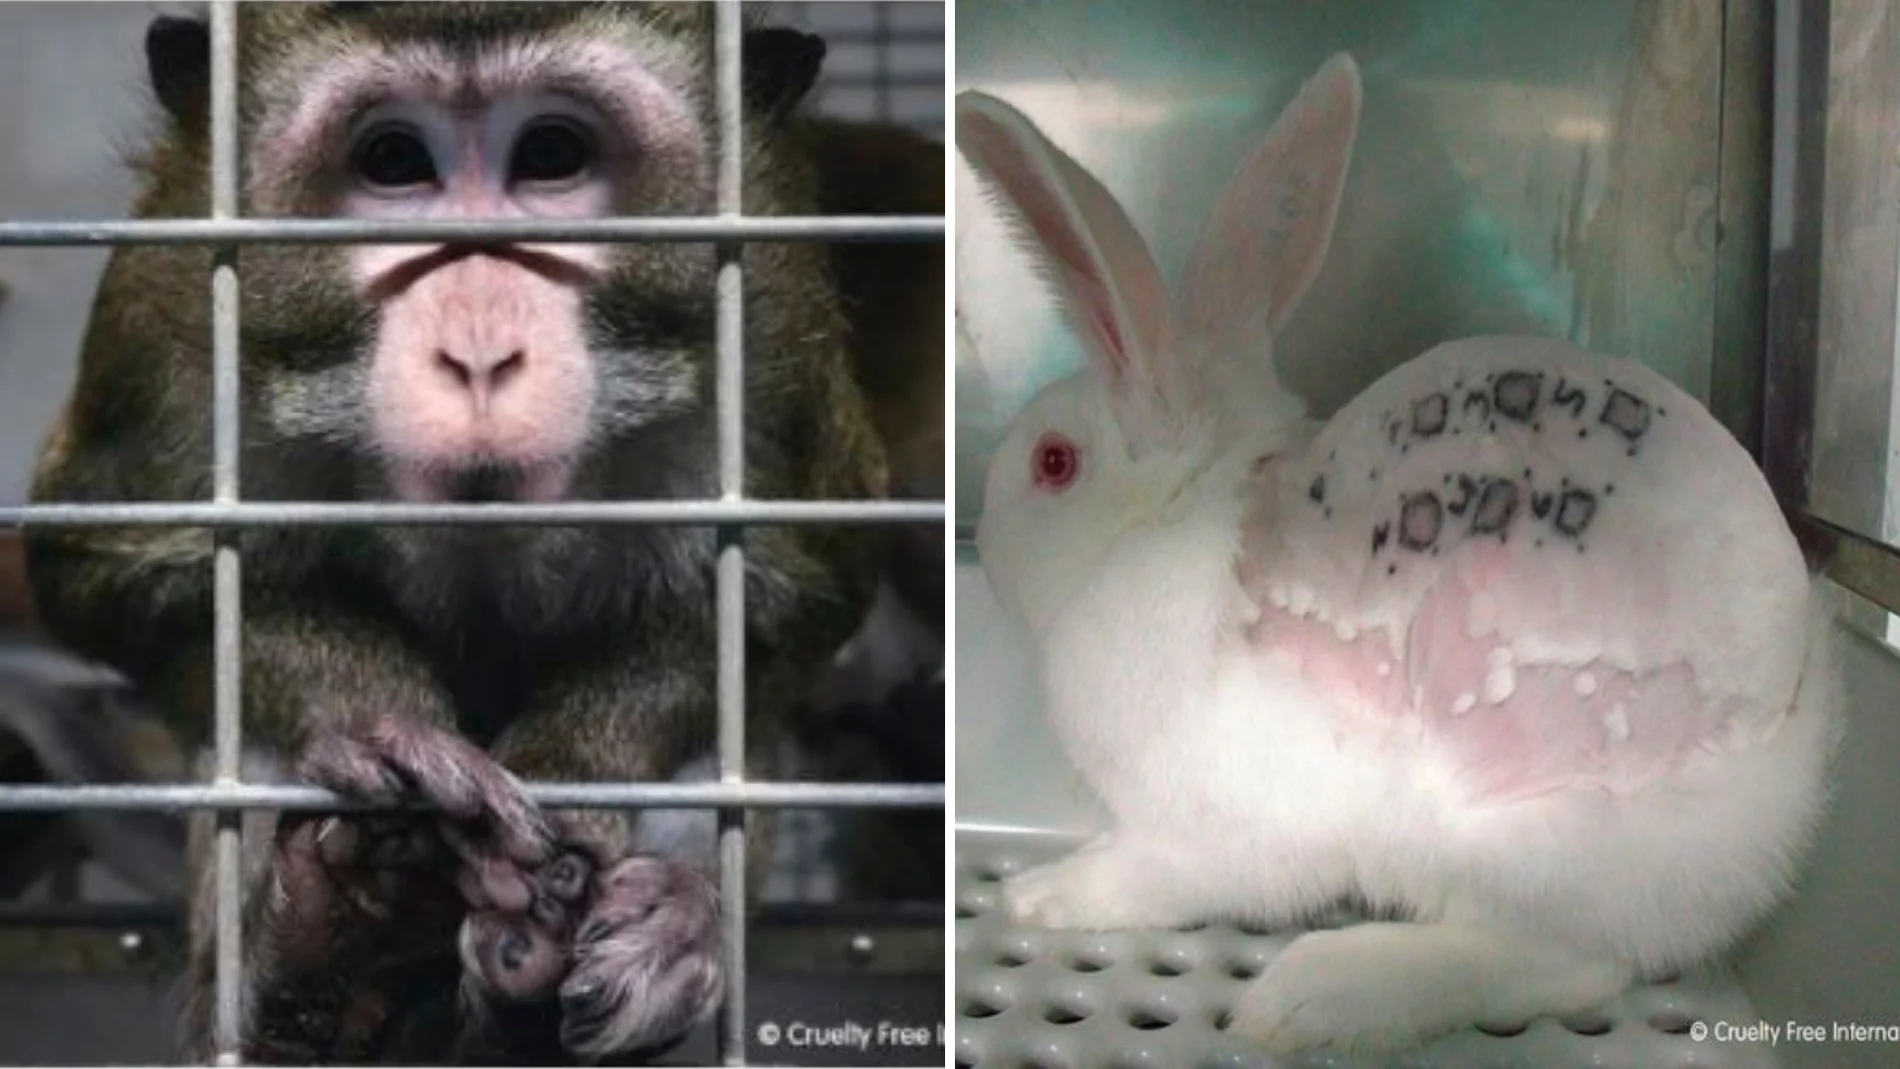 Imágenes del vídeo publicado por Cruelty Free Internacional